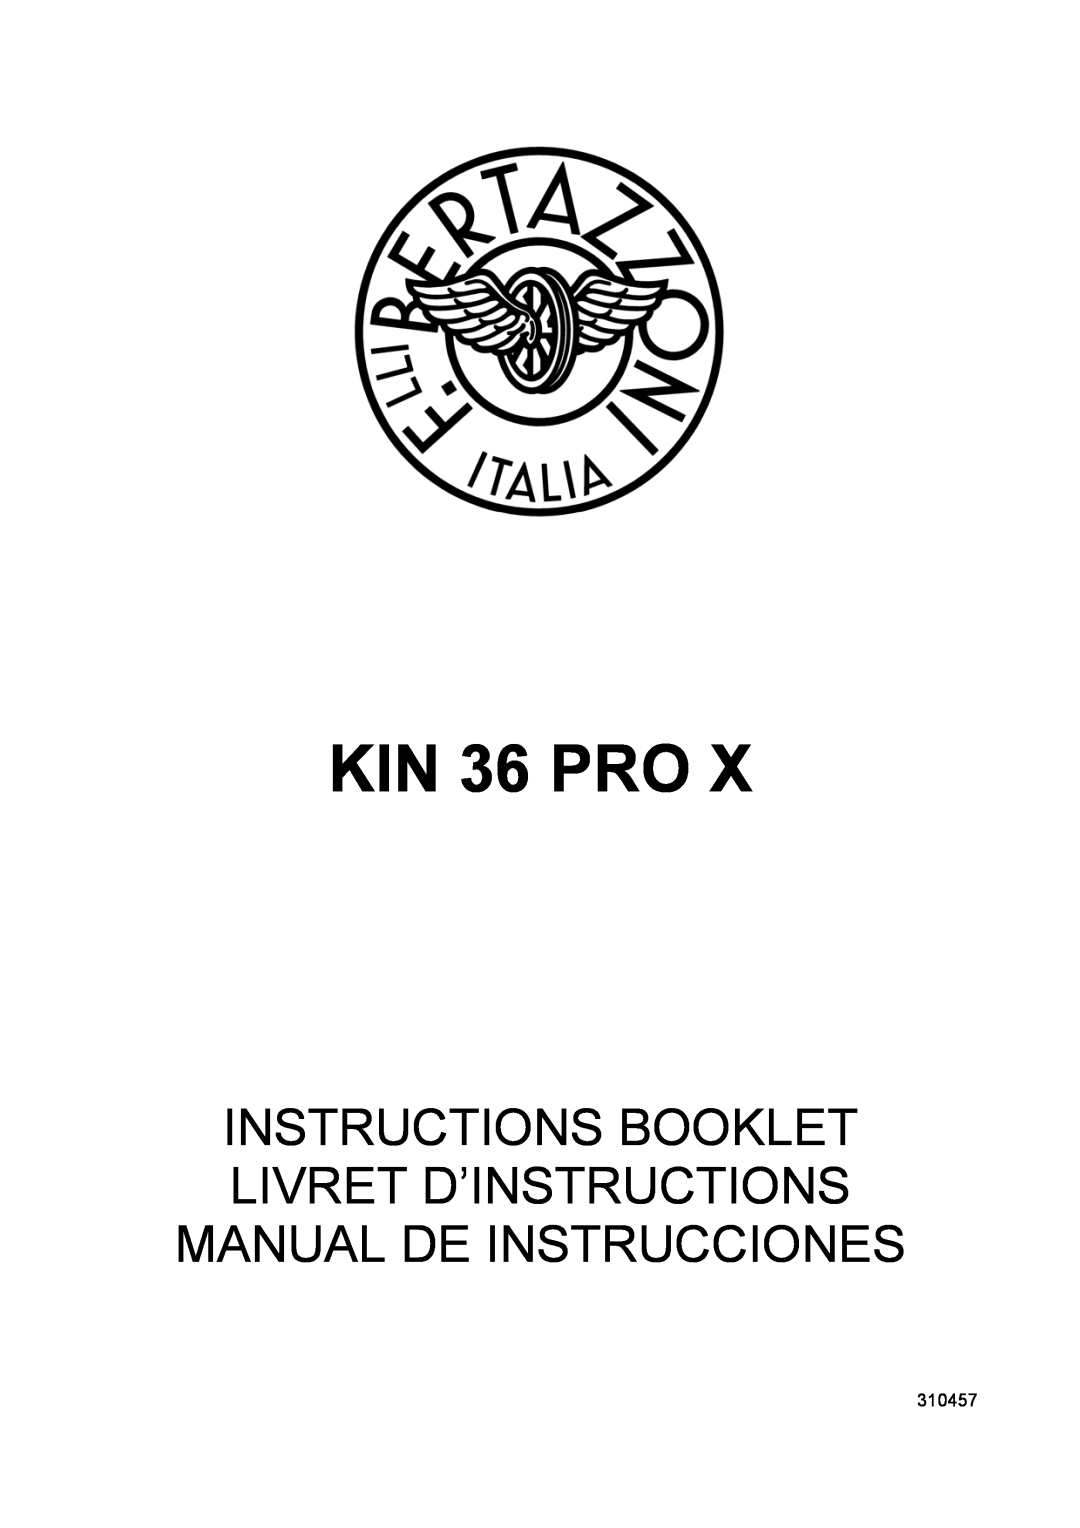 Bertazzoni KIN 36 PRO X manual 310457 